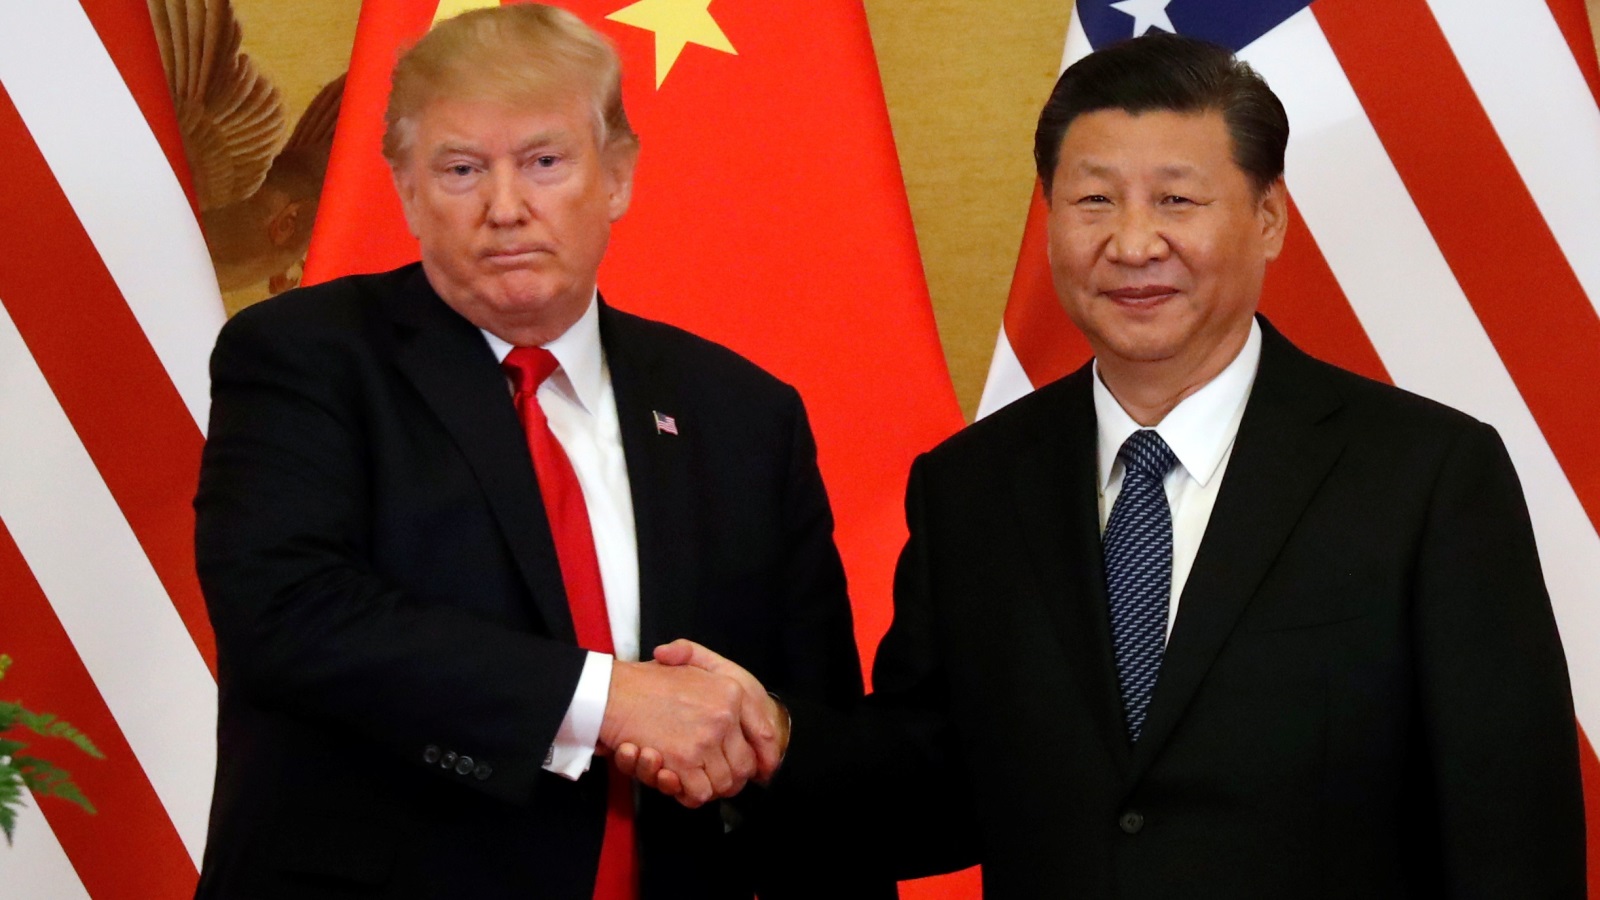 من المرجح أن سياسة ترامب تجاه الصين تلقى دعما كبيرا من قبل الحزبين، حيث ظل الكونغرس تاريخيا أكثر تشددا من الإدارات الأمريكية تجاه السياسات الصينية